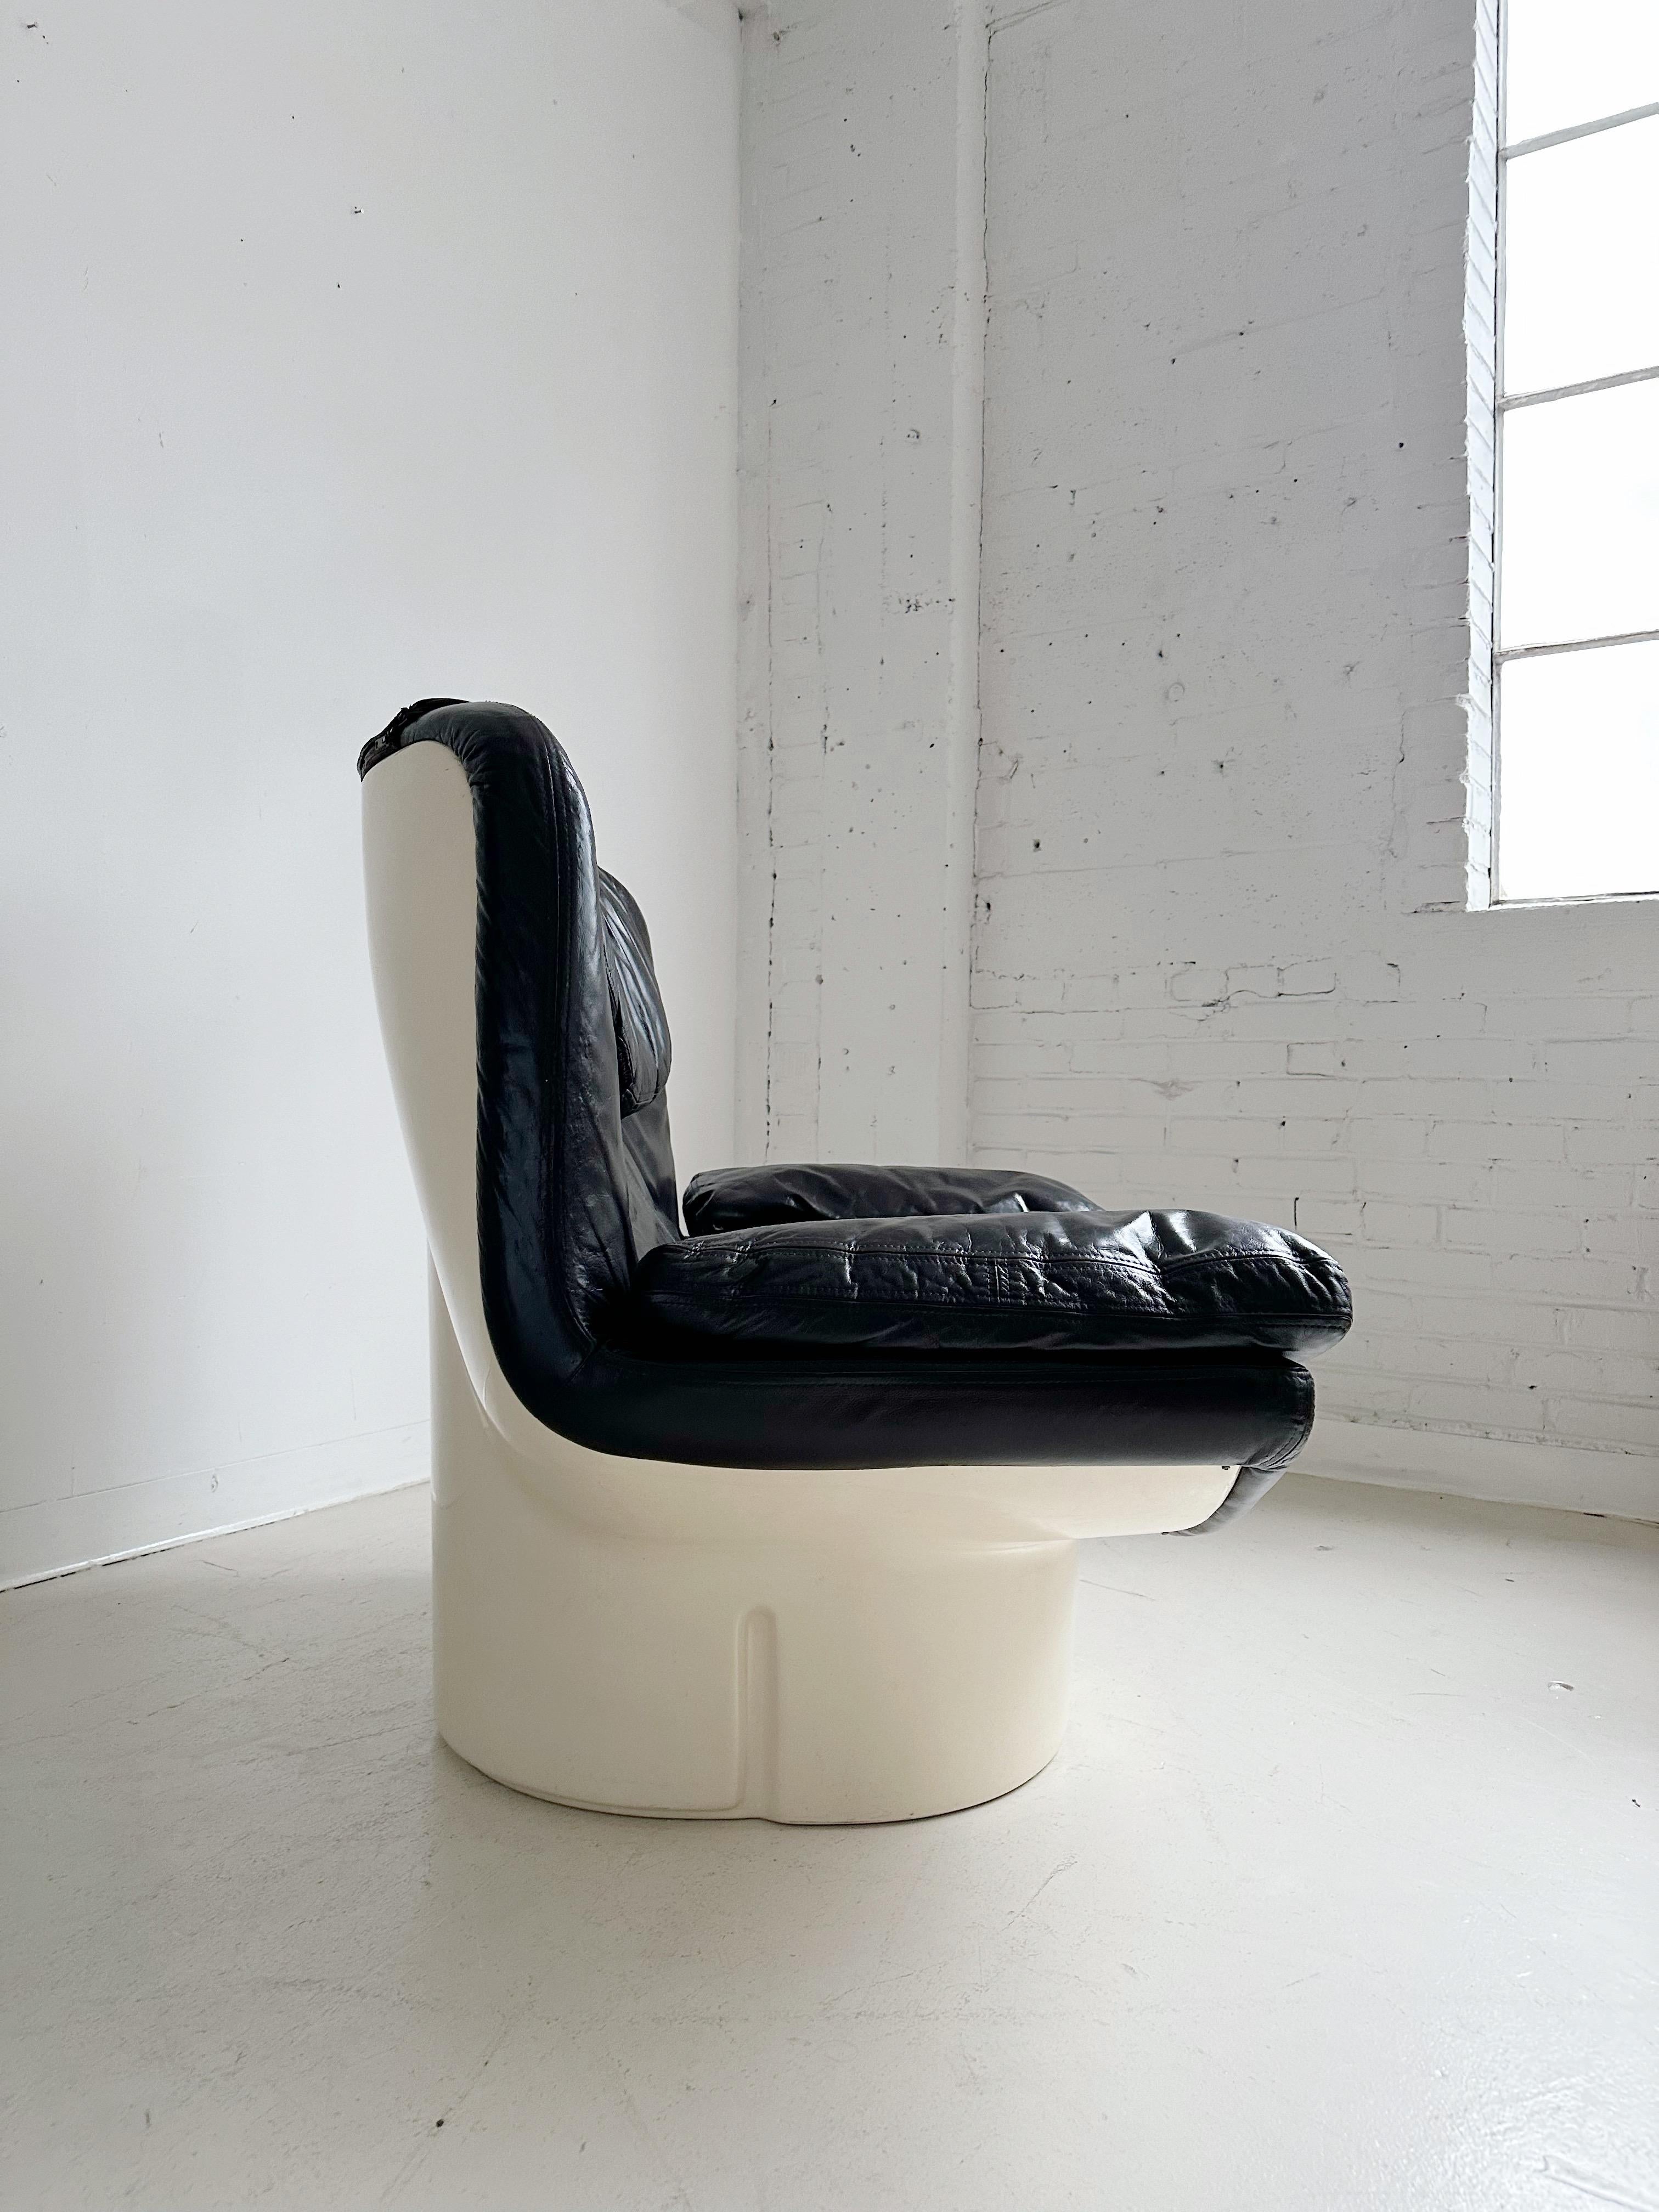 Chaise longue Il Poltrone par Titiana Ammanati et Giampiero Vitelli pour Comfort, années 70

Coussins en cuir brun foncé et base en fibre de verre

//

Dimensions :

43 